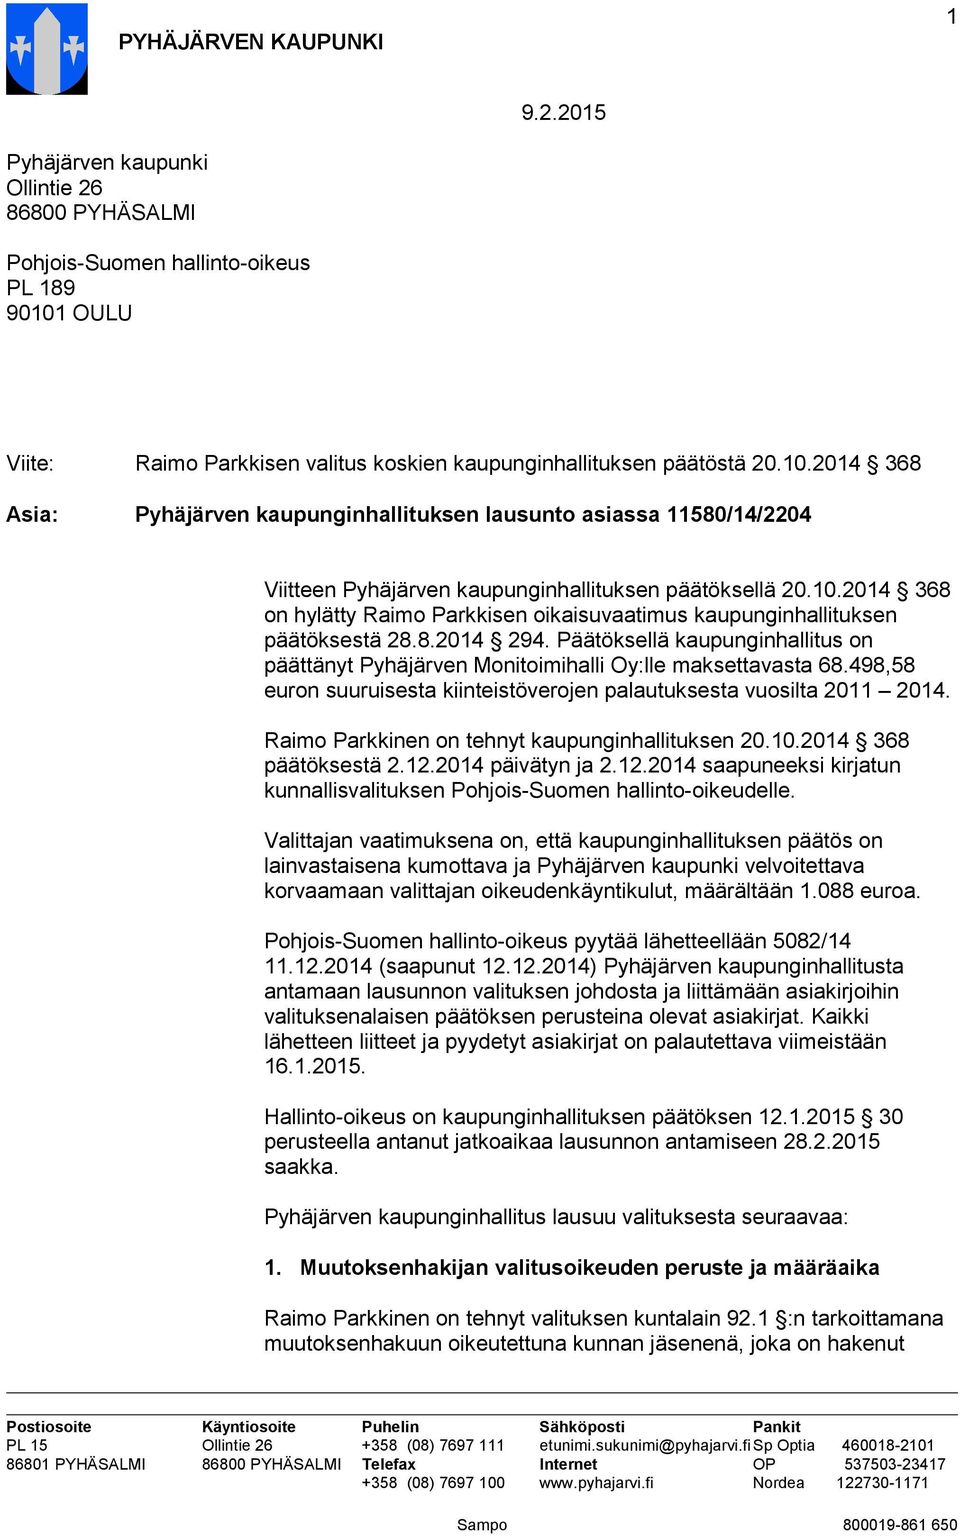 8.2014 294. Päätöksellä kaupunginhallitus on päättänyt Pyhäjärven Monitoimihalli Oy:lle maksettavasta 68.498,58 euron suuruisesta kiinteistöverojen palautuksesta vuosilta 2011 2014.